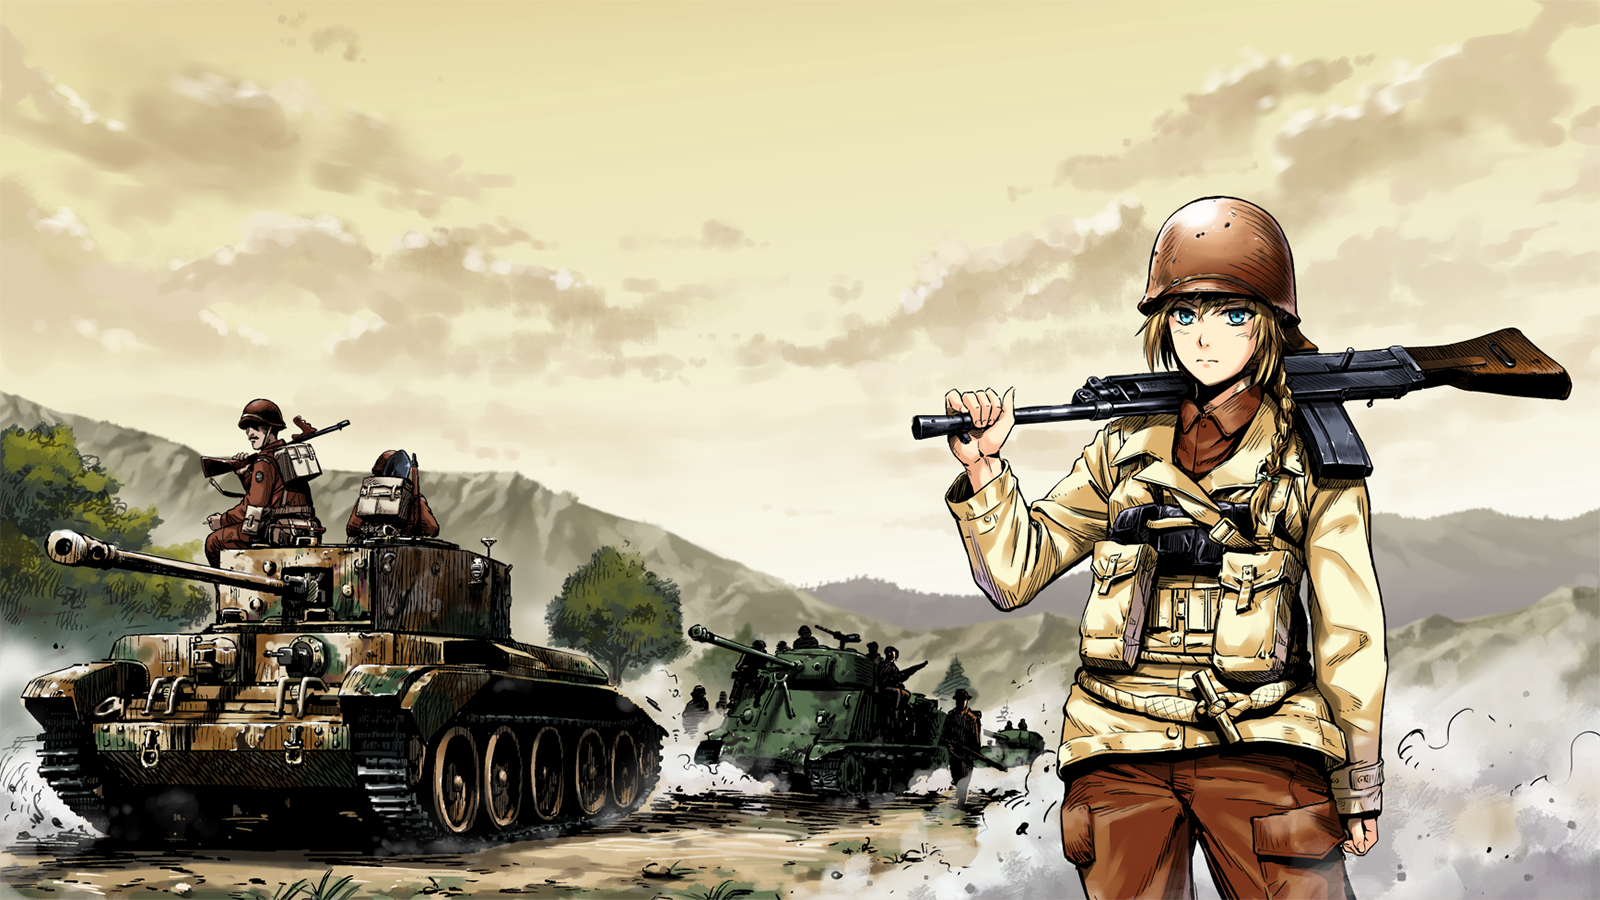 Anime Girls With Guns World War Ii Anime Girls Helmet Tank Sky Clouds Uniform Gun Standing Looking A 1600x900